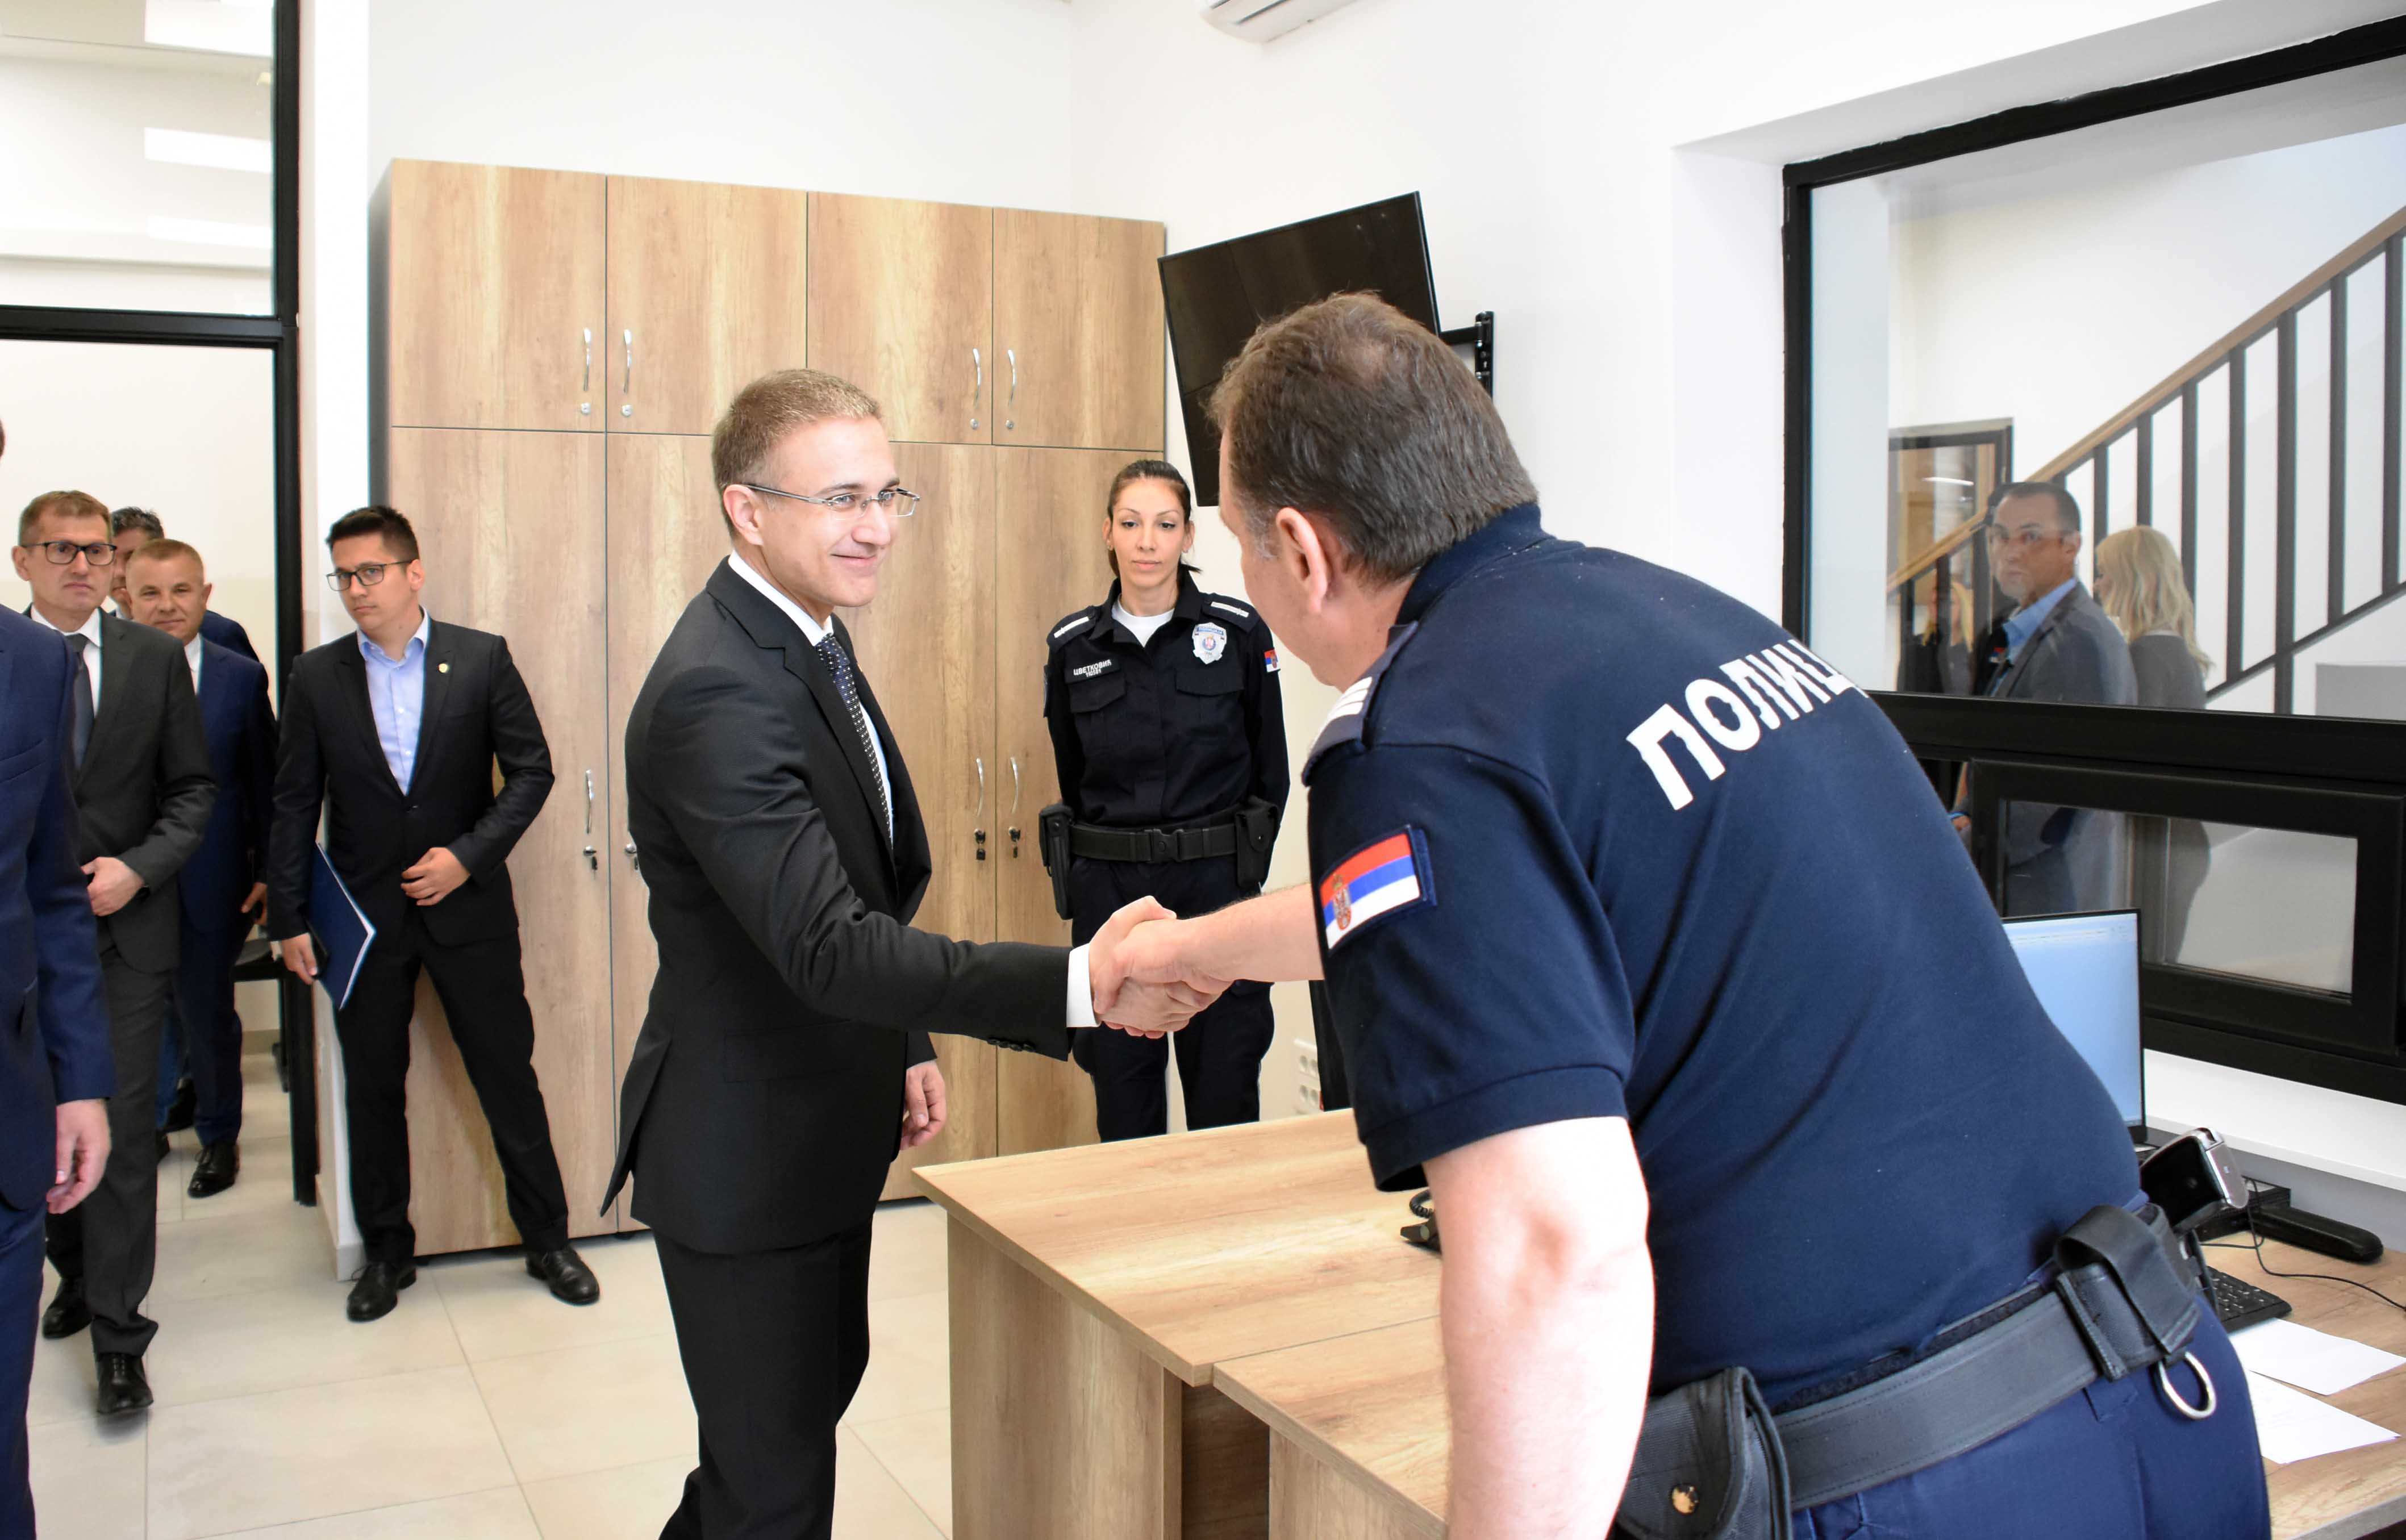 Стефановић: Инвестиције у полицијске станице значе боље услове за рад наших људи, али и за грађане који у њима остварују своја права